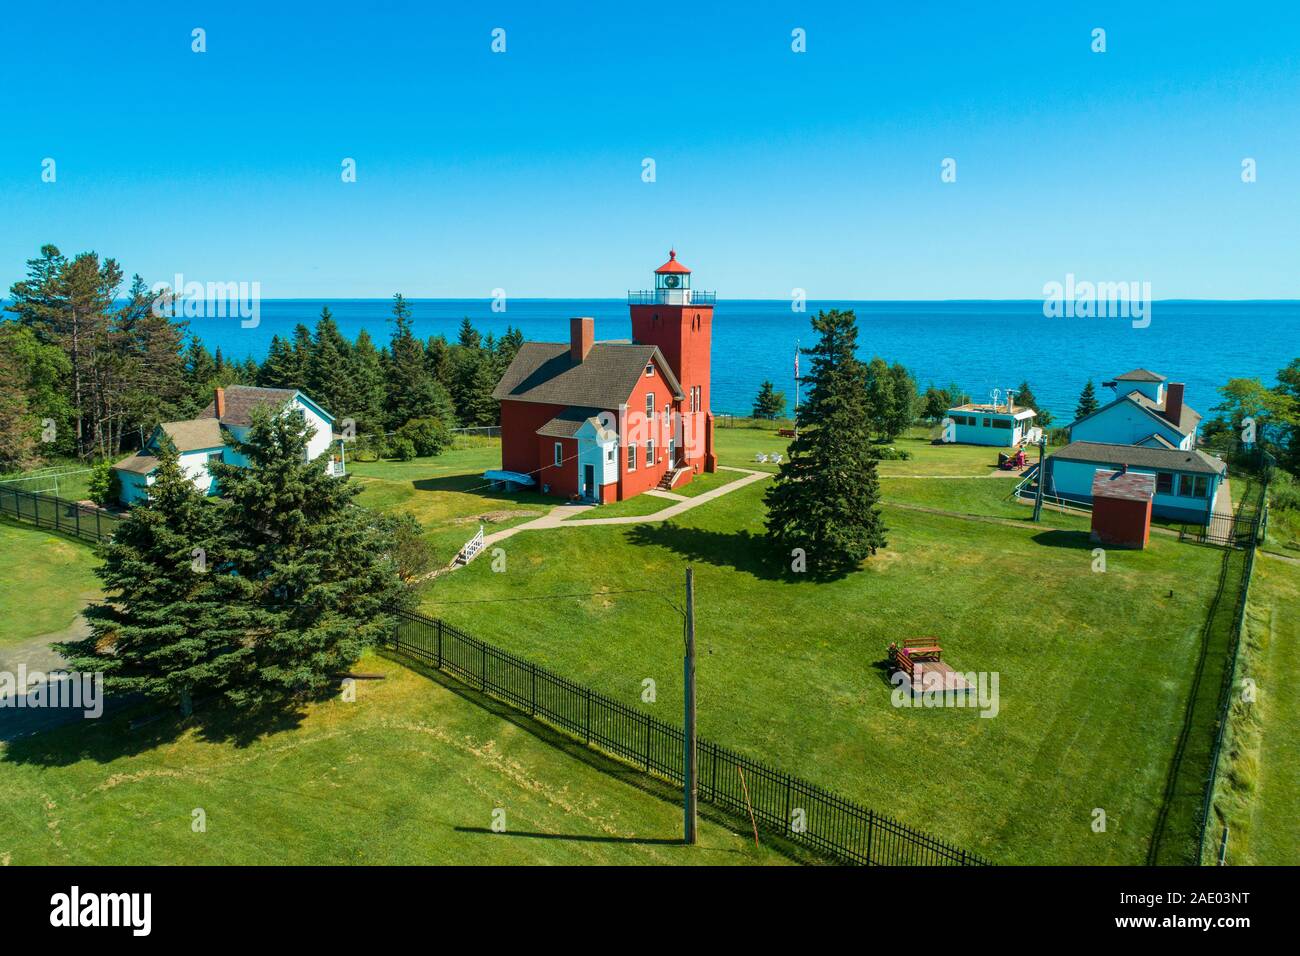 Die zwei Häfen Licht Station ist der älteste Leuchtturm der US-Staat Minnesota. Mit Blick auf den Lake Superior Achat Bay, das Licht Statio Stockfoto